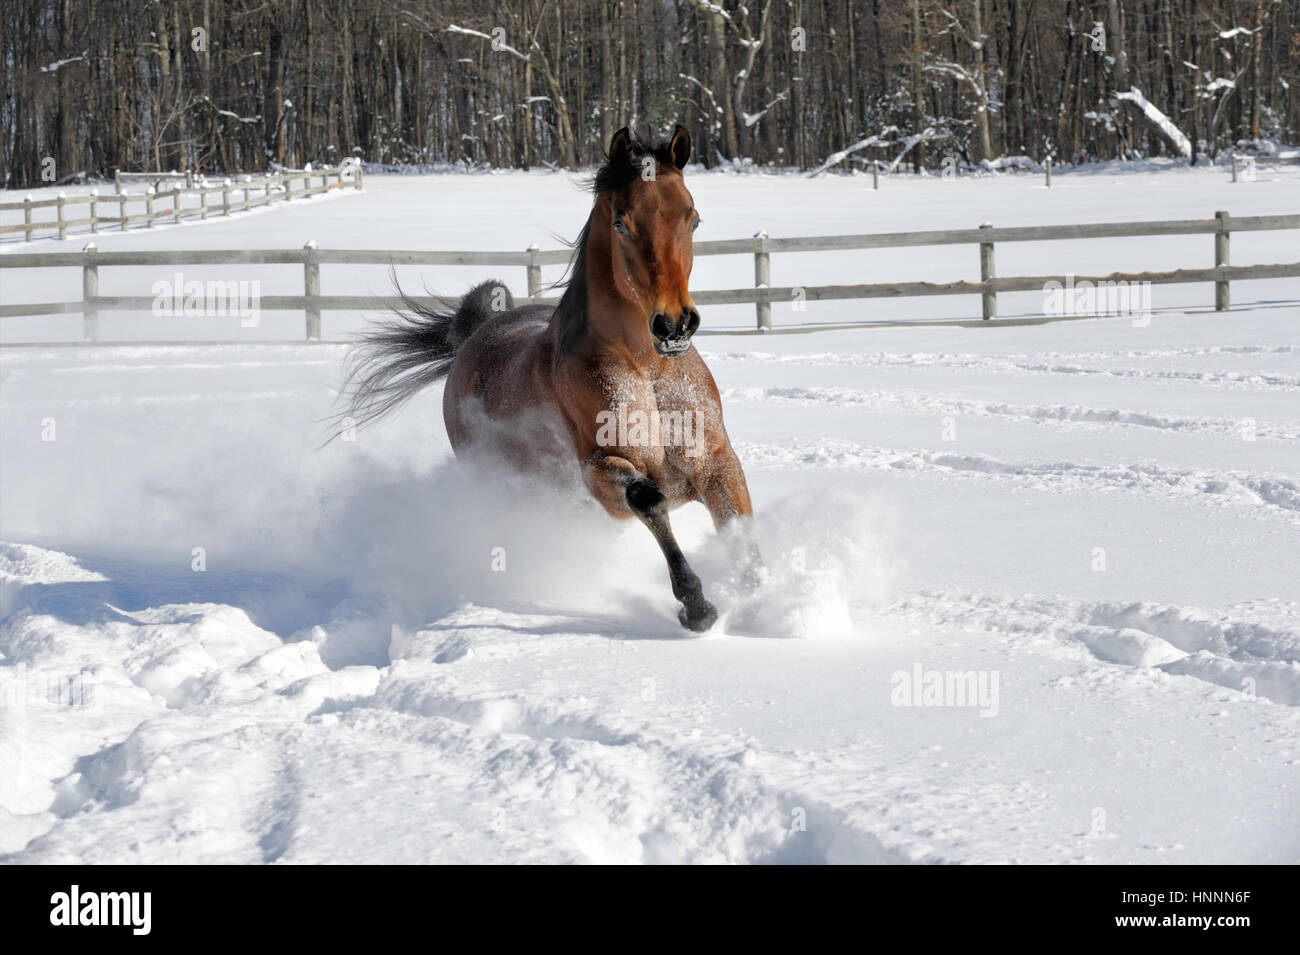 Arabian Bay horse exubérante et tronçonnage en poudreuse profonde dans une zone clôturée, éclairée par le champ d'hiver. Cheval marron avec une crinière noire de pied, USA Banque D'Images